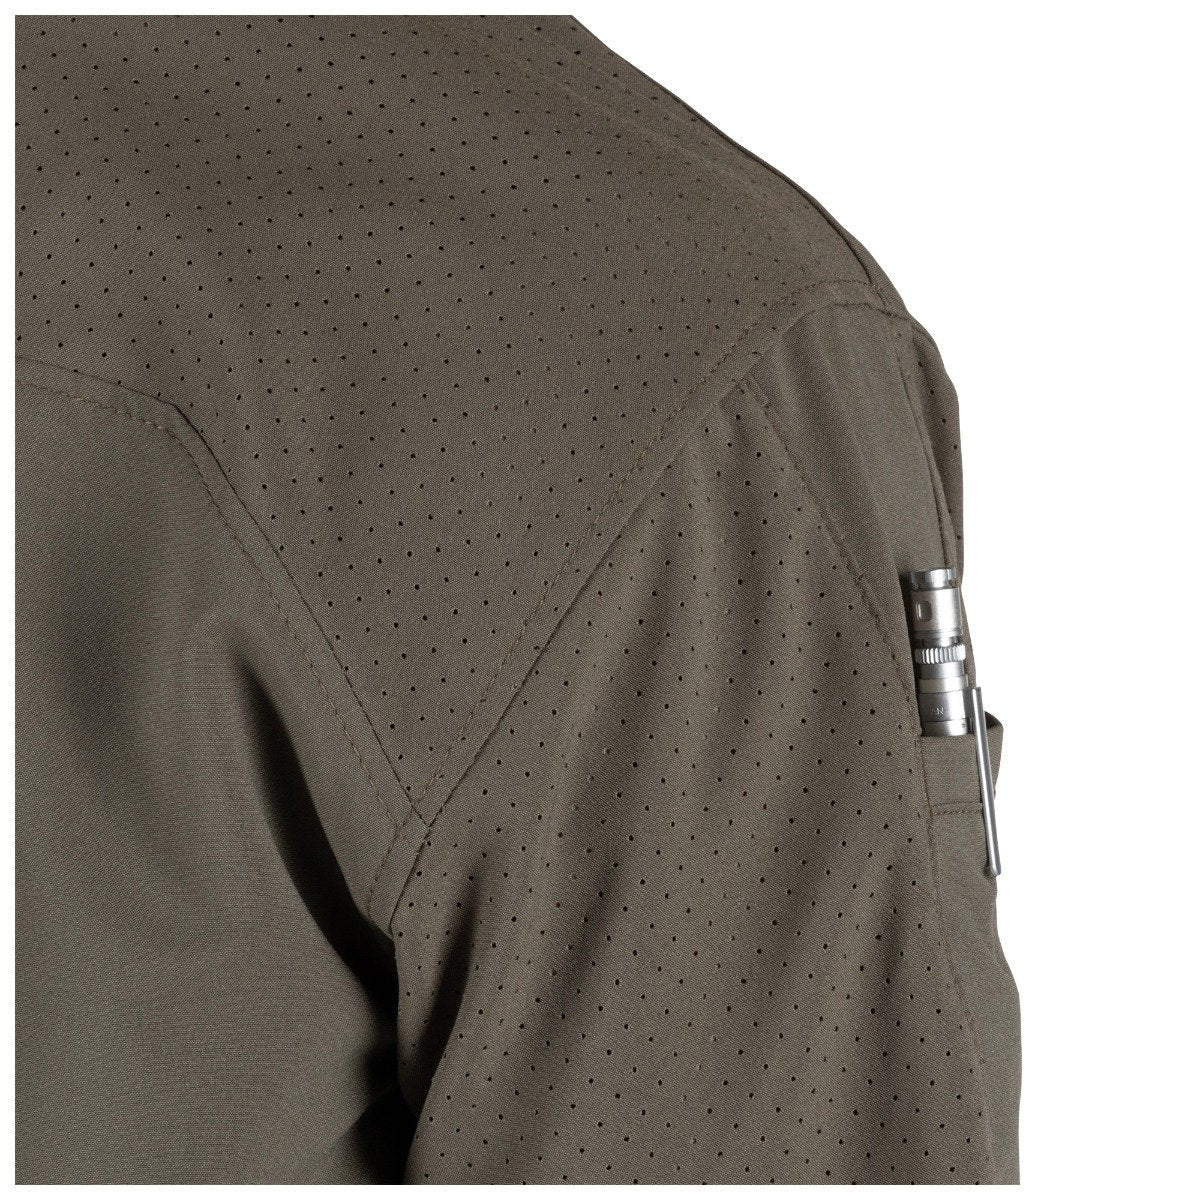 5.11 Tactical Freedom Flex Woven Short Sleeve Shirt Black Shirts 5.11 Tactical Tactical Gear Supplier Tactical Distributors Australia